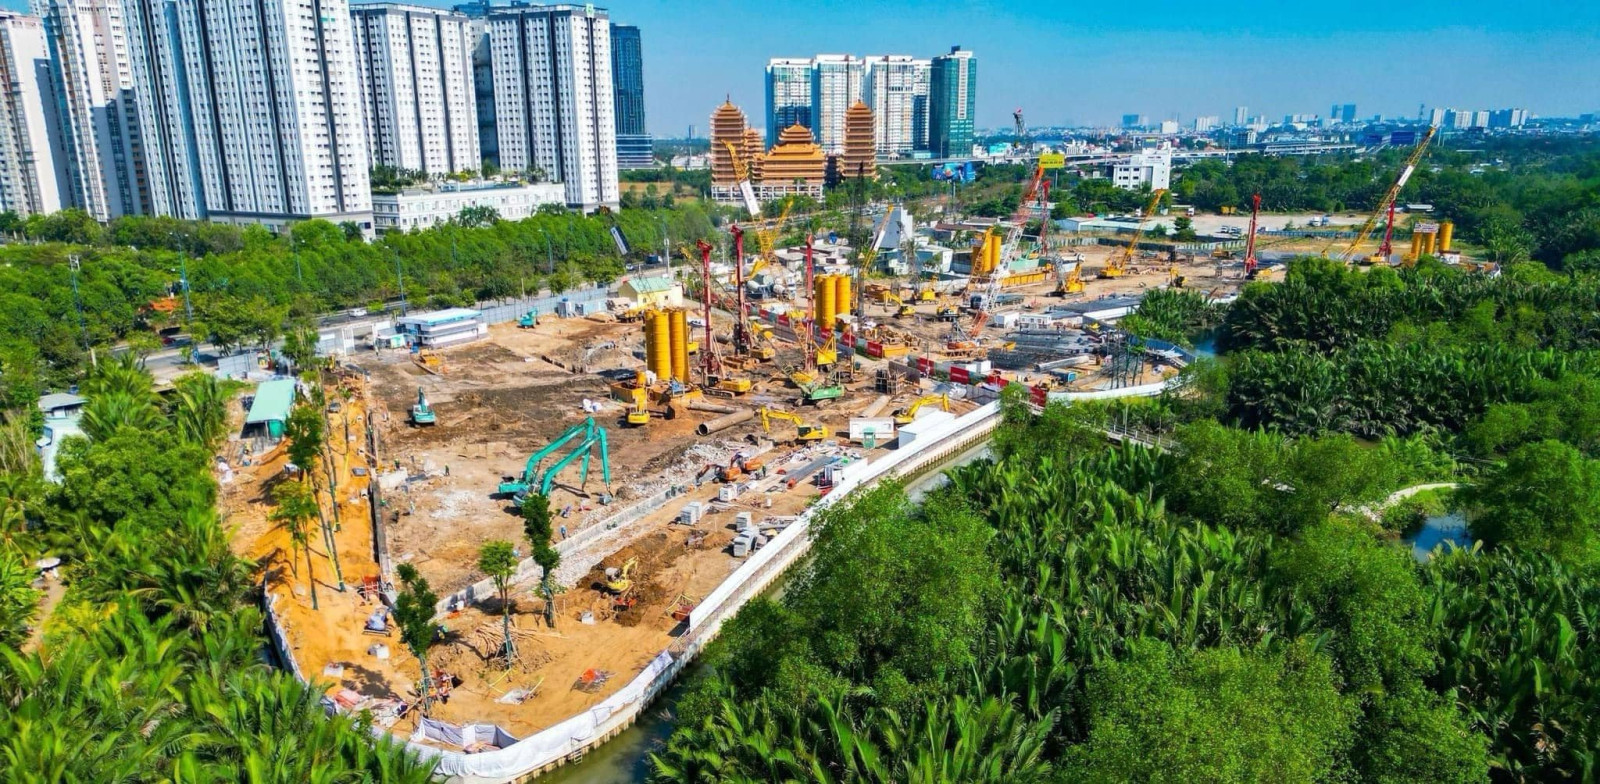 Dự án căn hộ mặt tiền Mai Chí Thọ, TP Thủ Đức, có giá khoảng 130-170 triệu đồng/m2